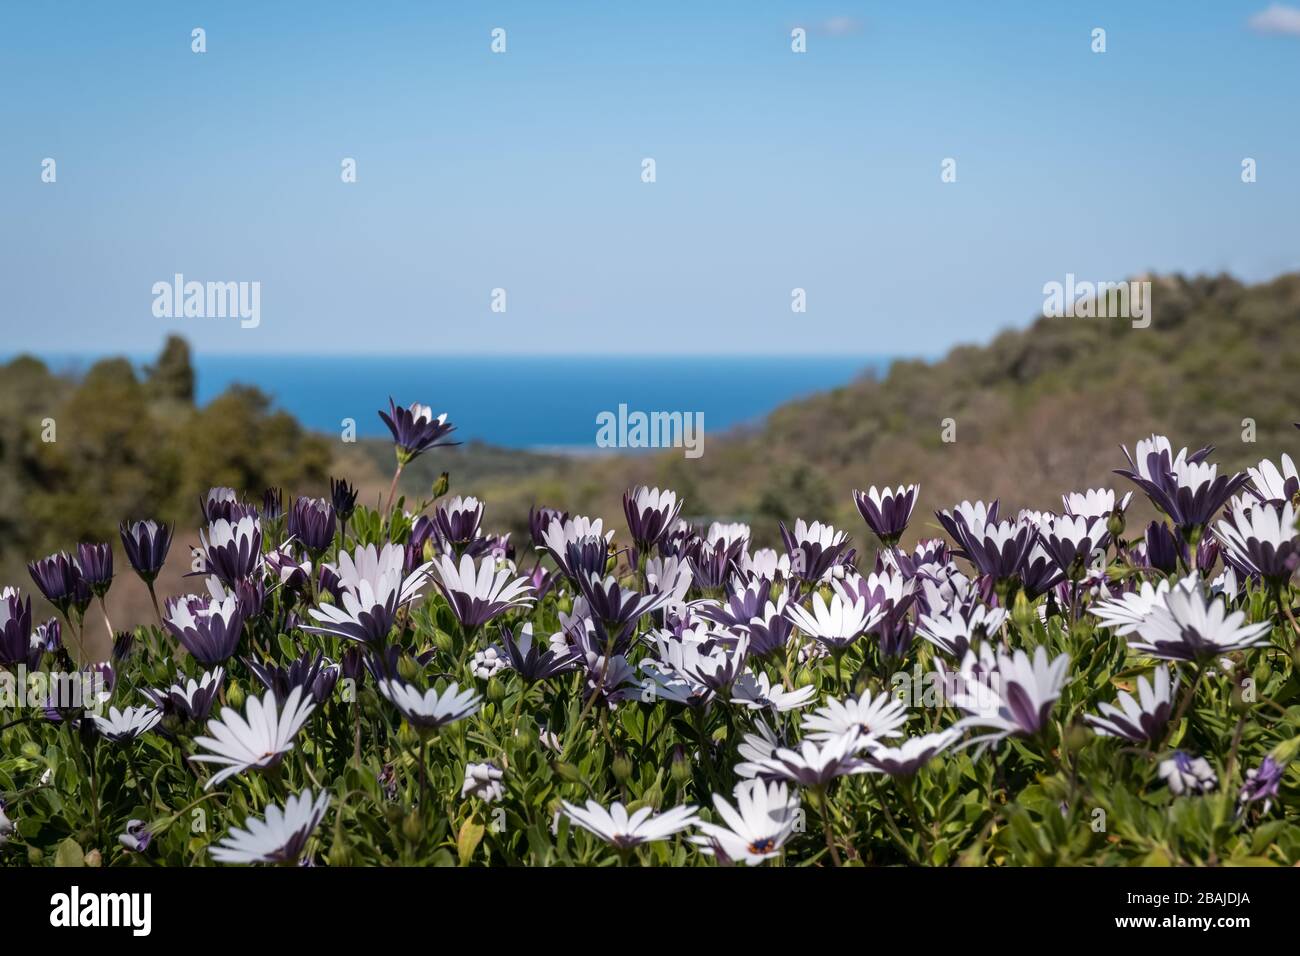 Daisies violettes méditerranéennes bleues et blanches (Dimorphotheca ecklonis) éclairées à la lumière du soleil avec la mer Méditerranée bleue et le ciel bleu au loin Banque D'Images